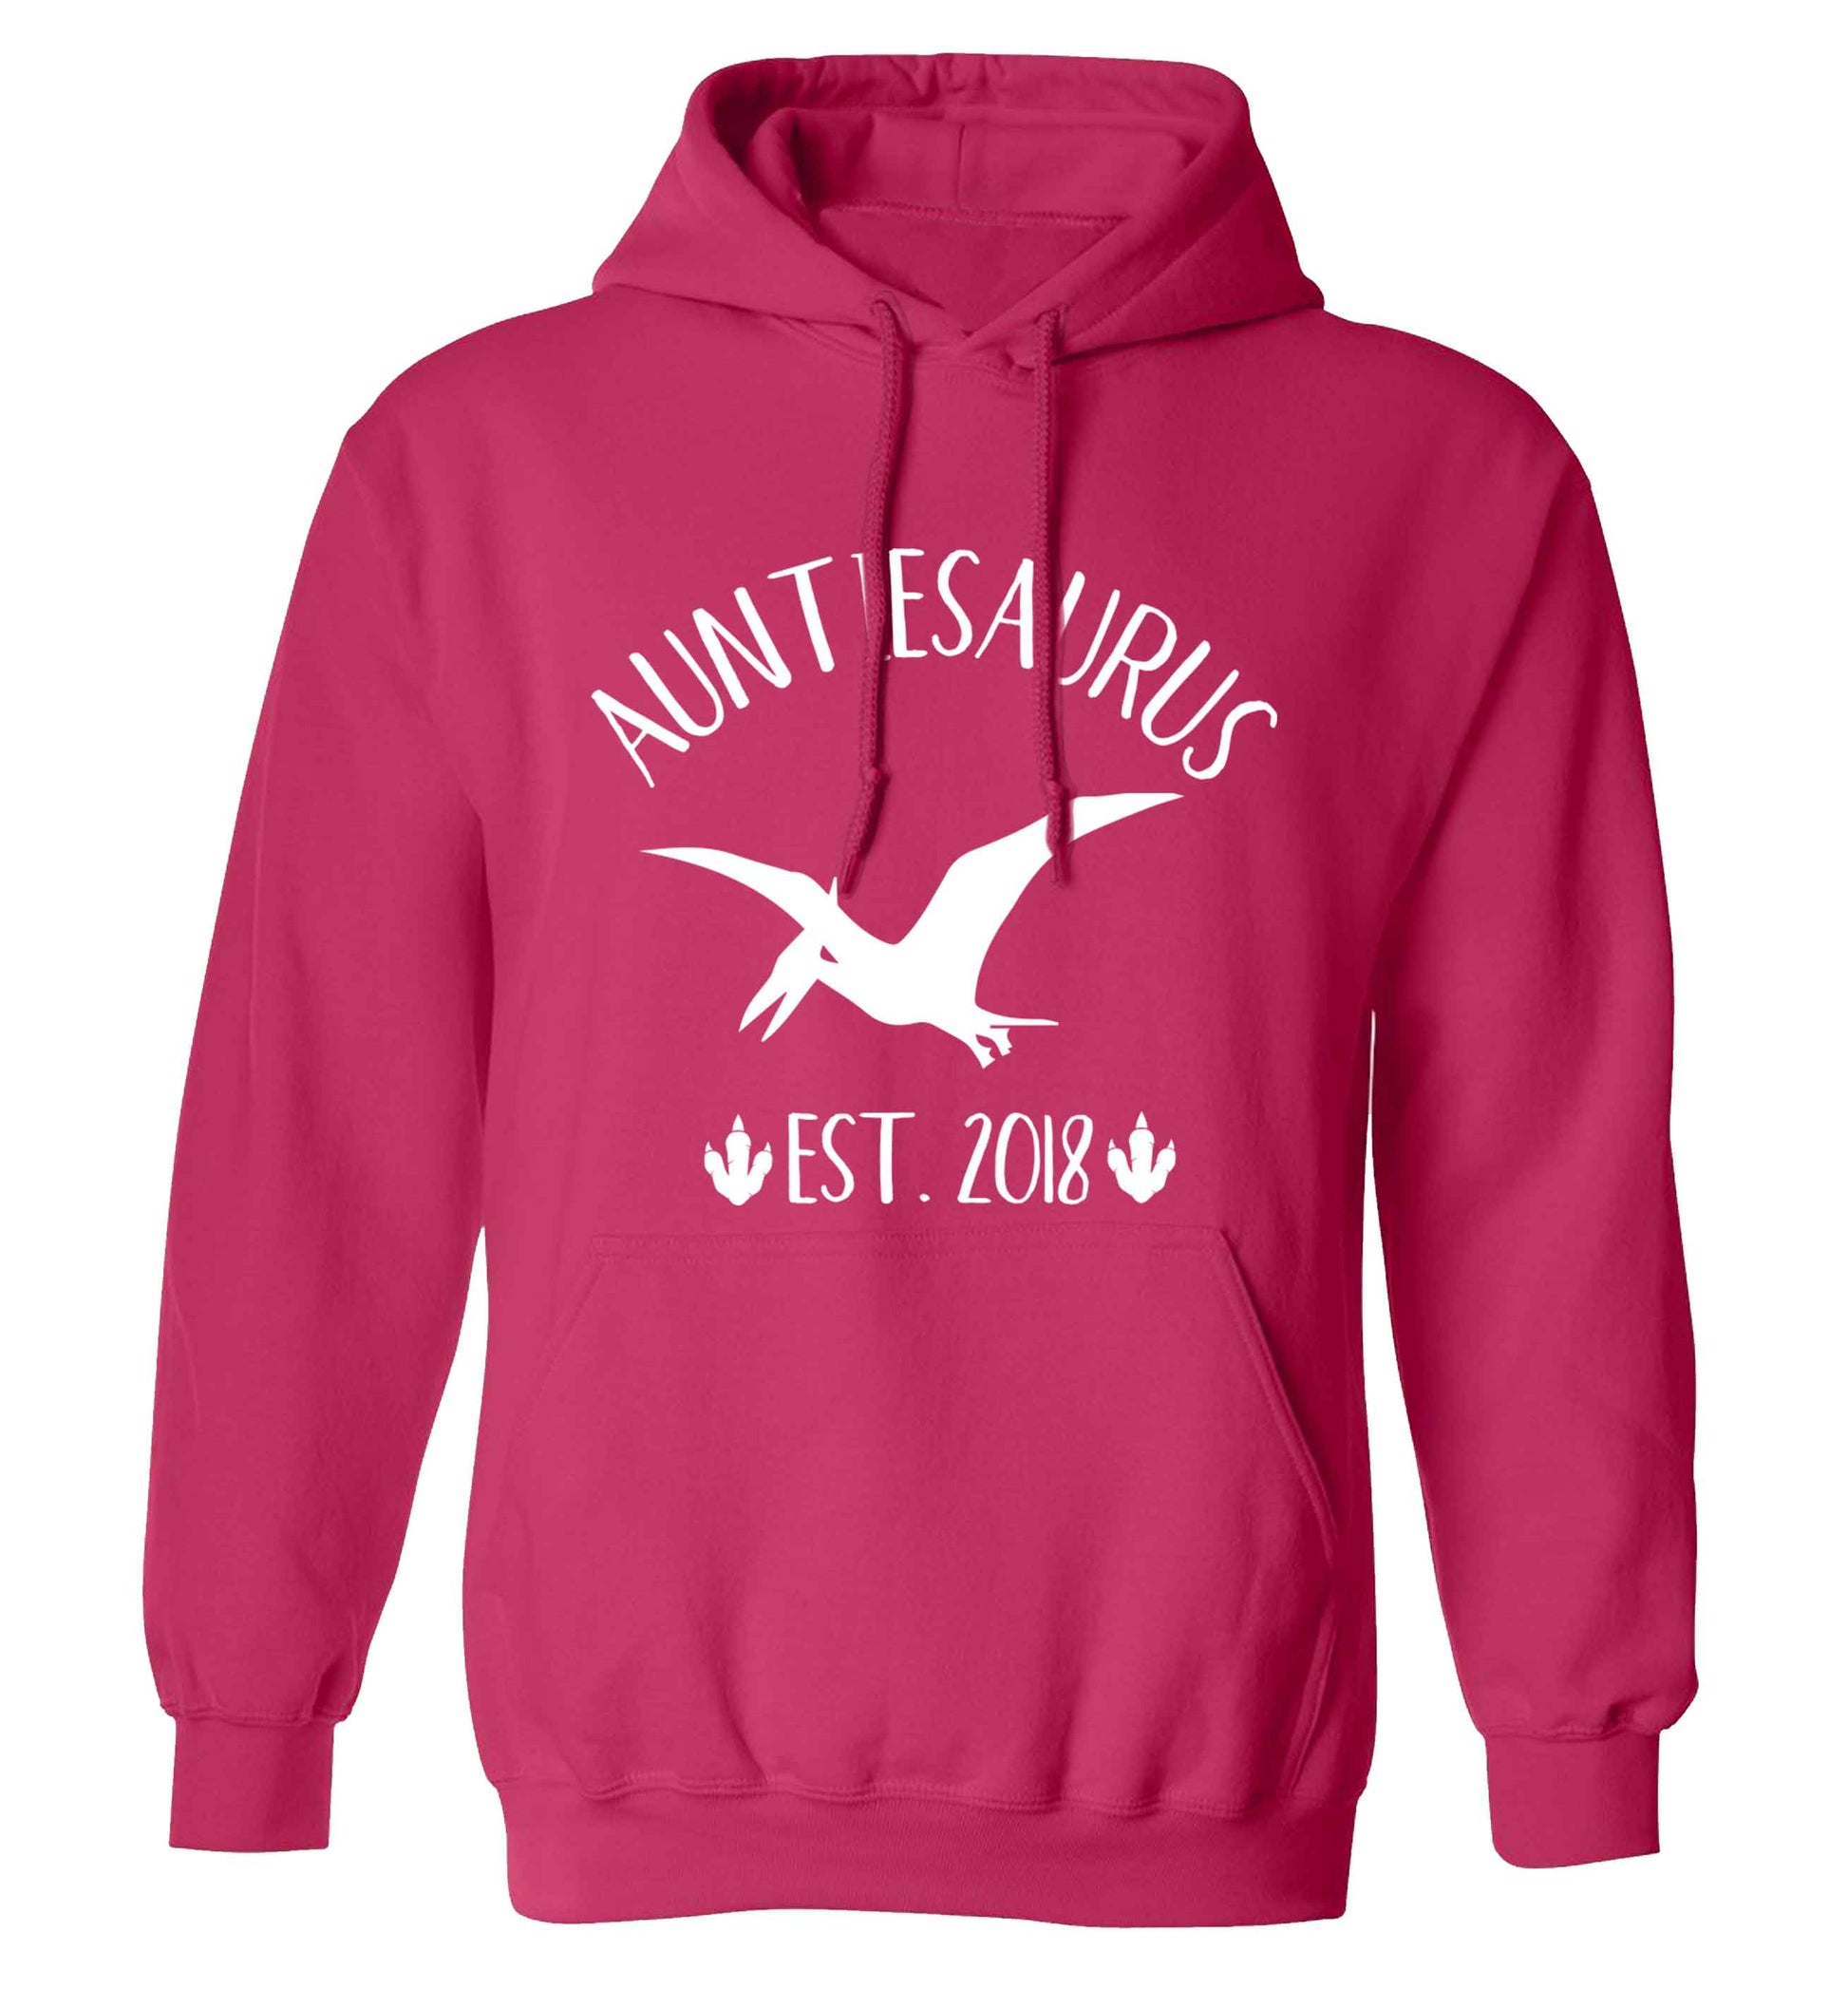 Personalised auntiesaurus since (custom date) adults unisex pink hoodie 2XL